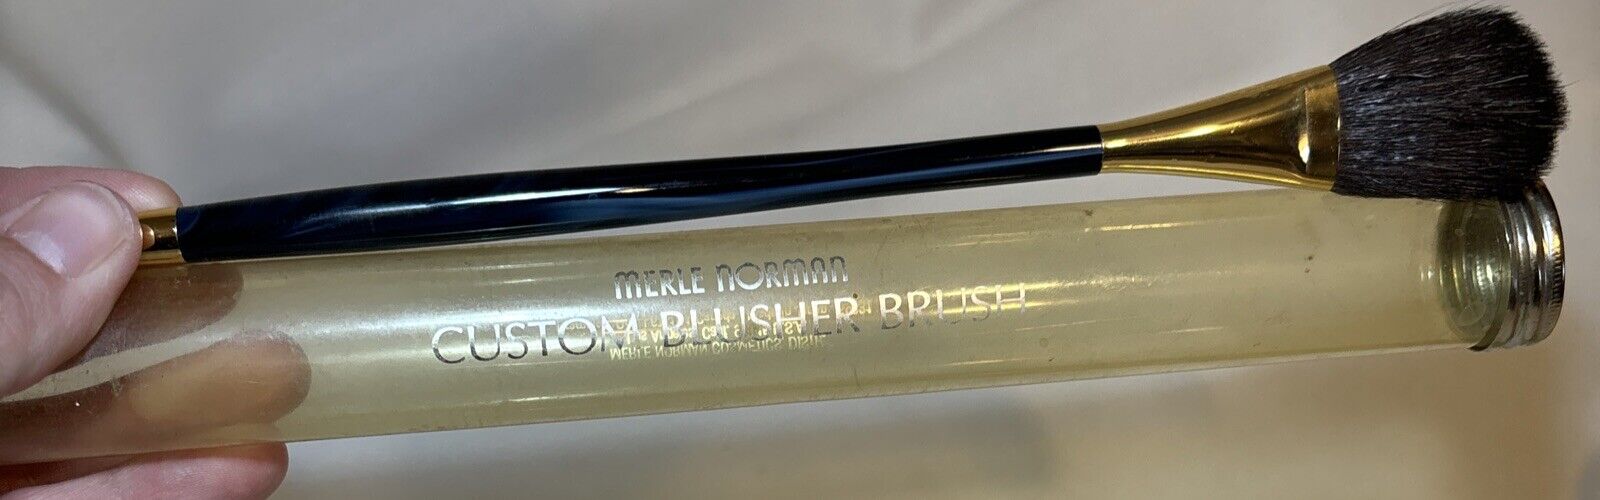 VTG Merle Norman Custom Blusher Brush Blue Handled Makeup Brush 